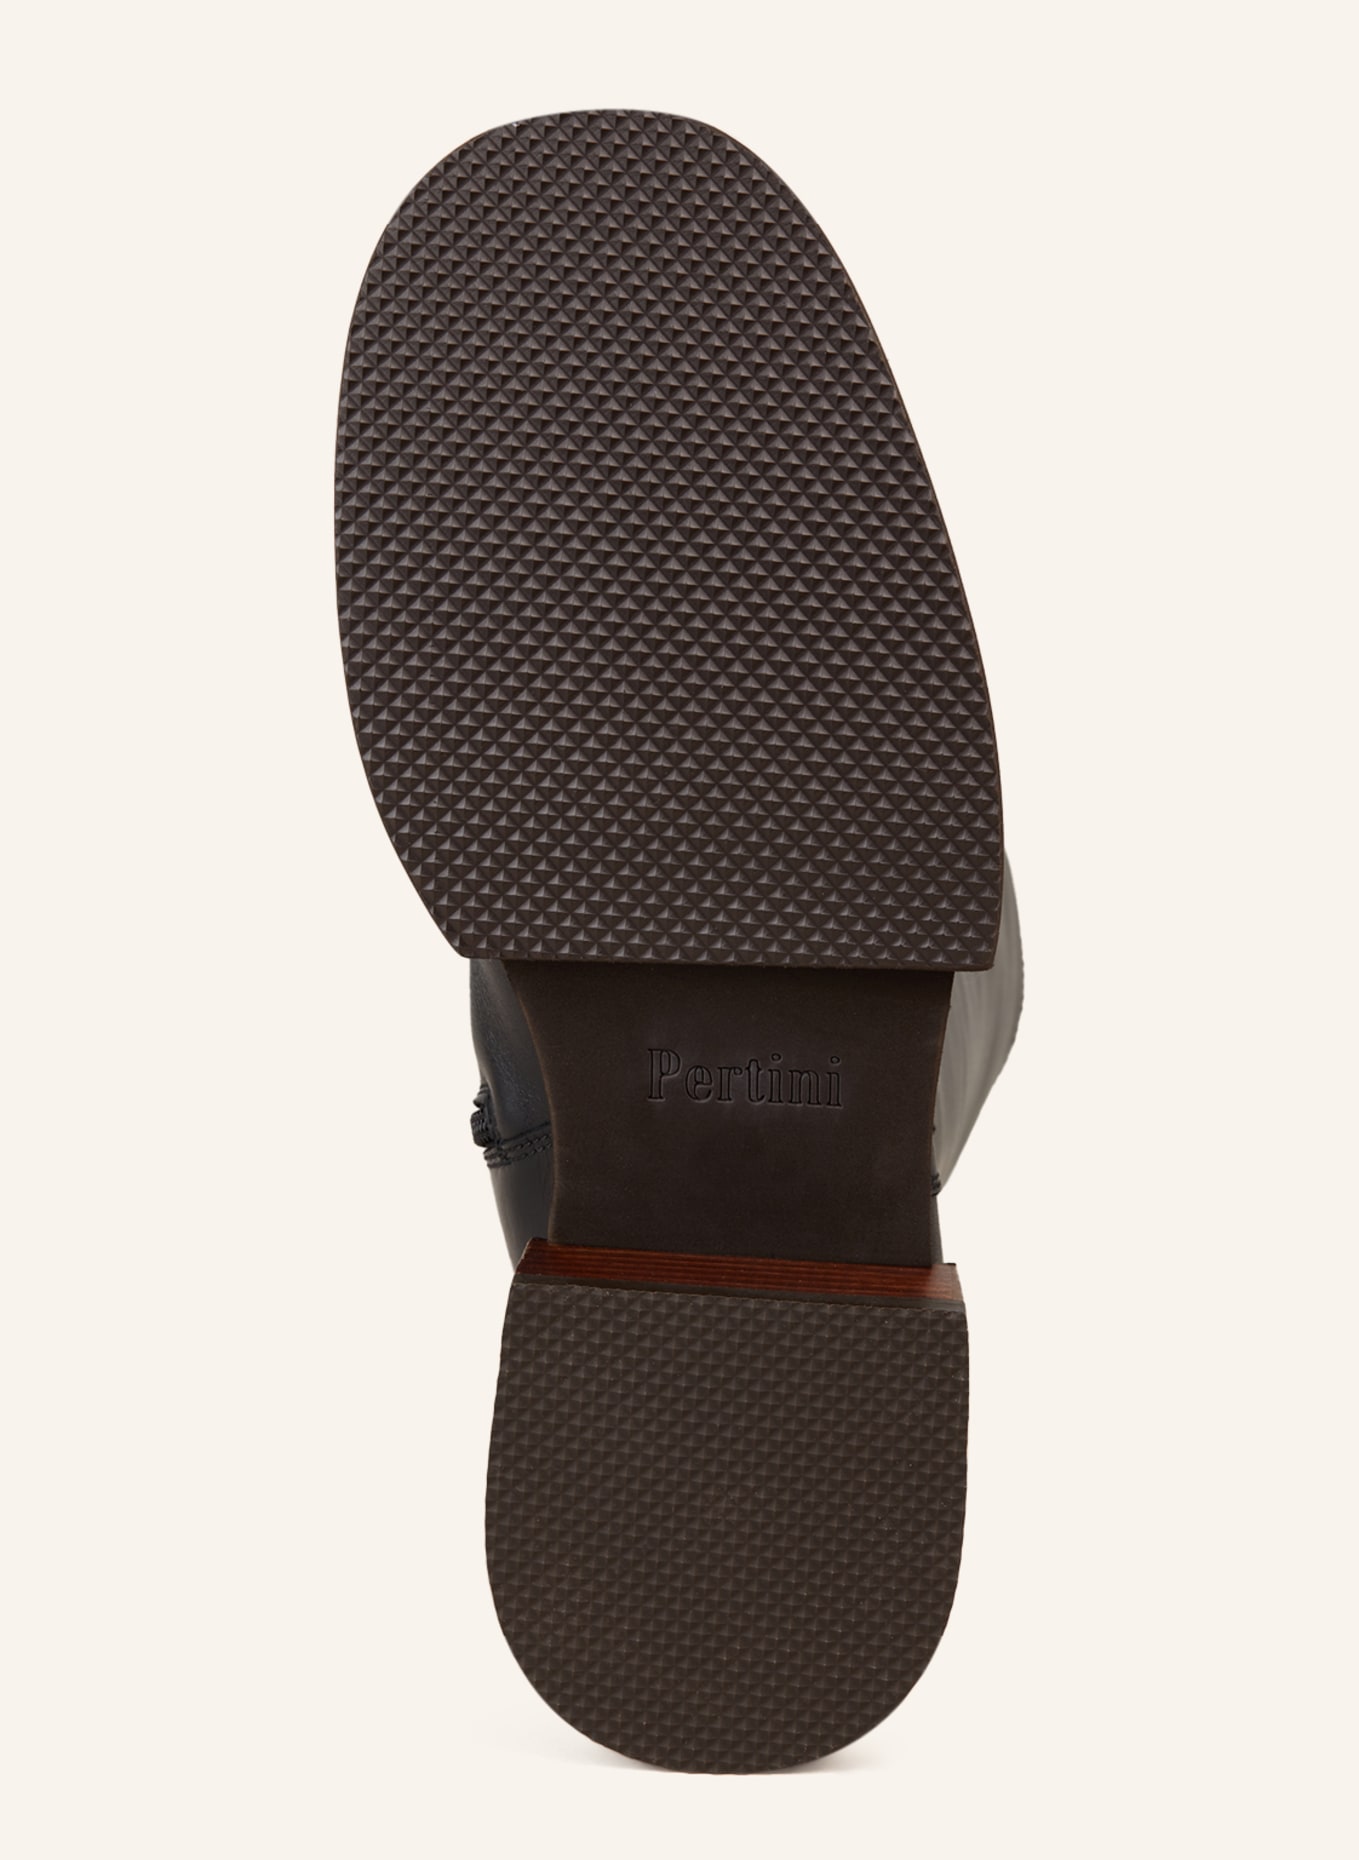 Pertini Boots, Color: BLACK (Image 7)